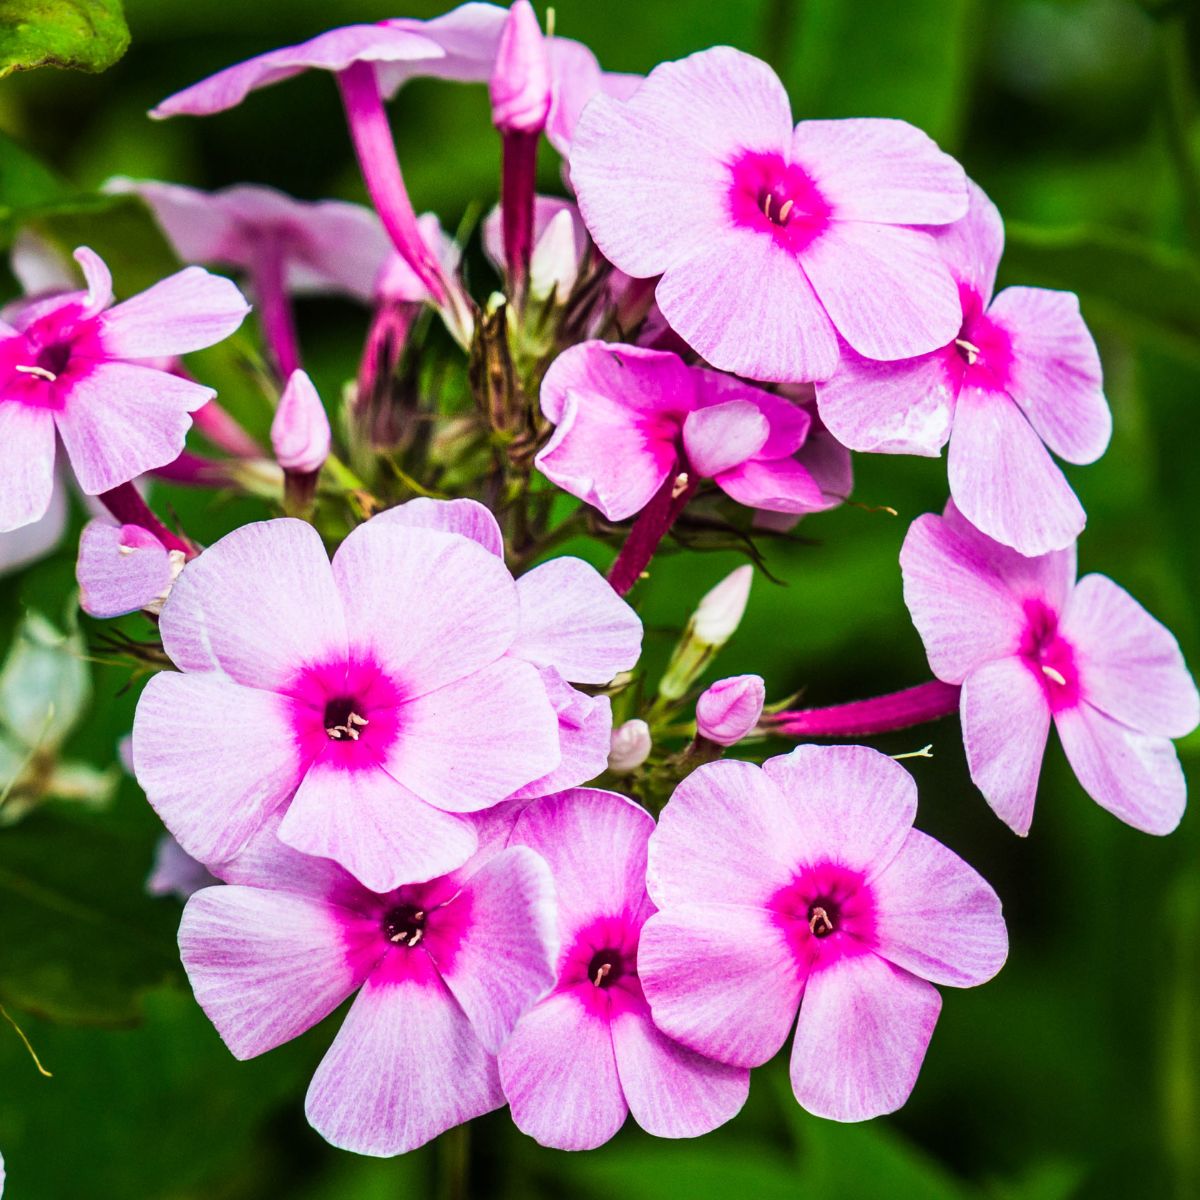 pink garden phlox flowers.